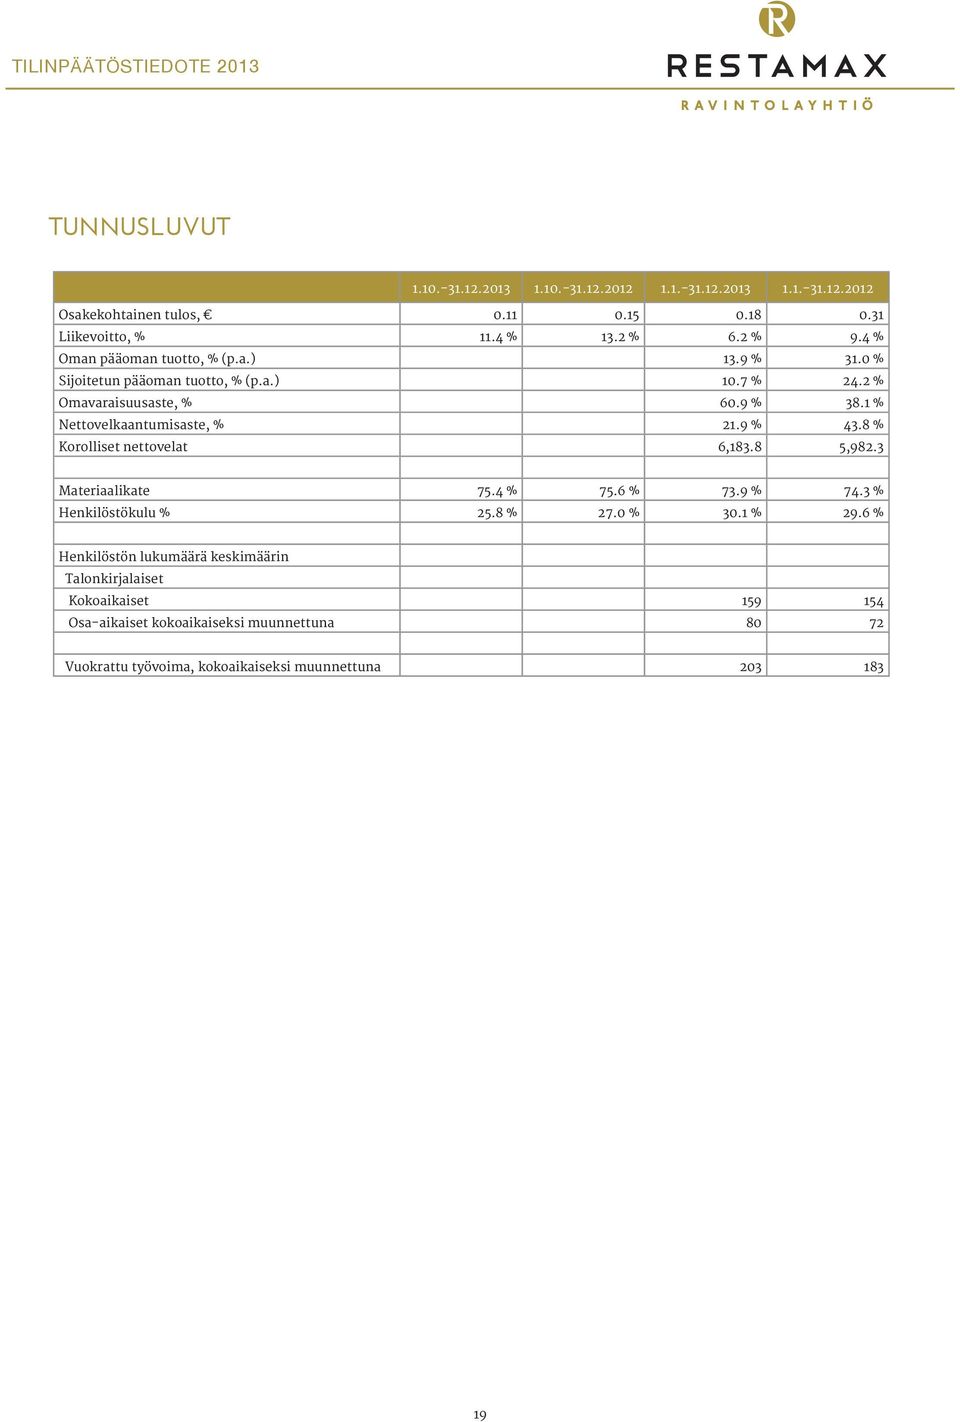 1 % Nettovelkaantumisaste, % 21.9 % 43.8 % Korolliset nettovelat 6,183.8 5,982.3 Materiaalikate 75.4 % 75.6 % 73.9 % 74.3 % Henkilöstökulu % 25.8 % 27.0 % 30.